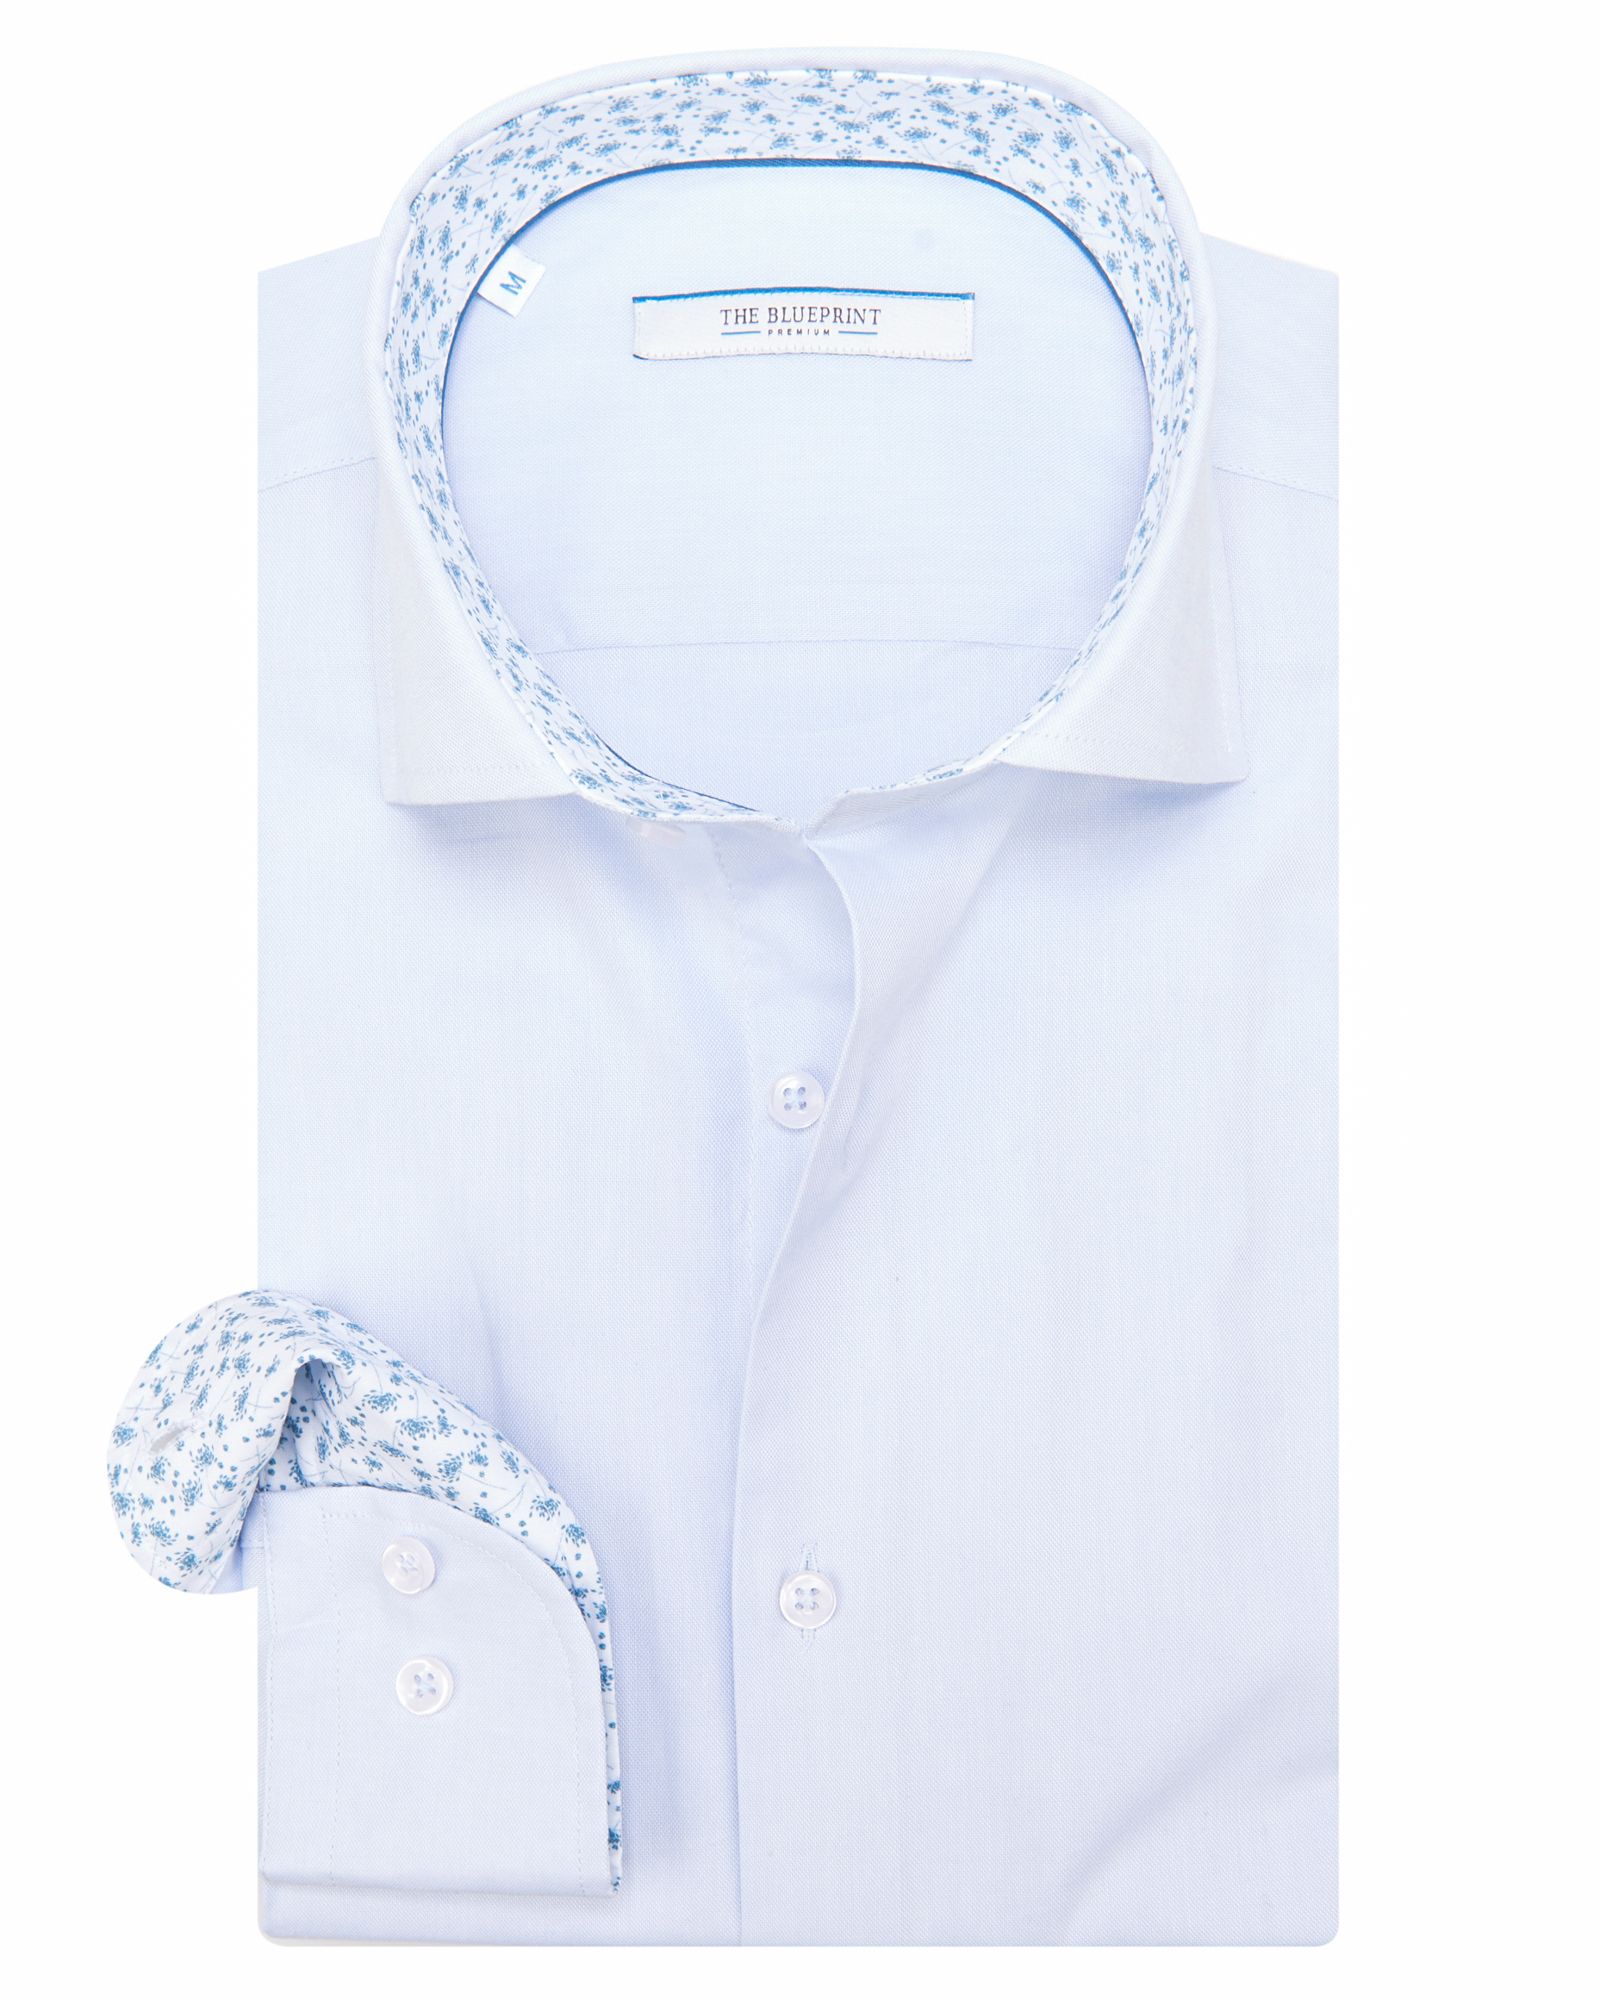 The BLUEPRINT Premium Casual Overhemd LM L.BLUE 082220-001-L